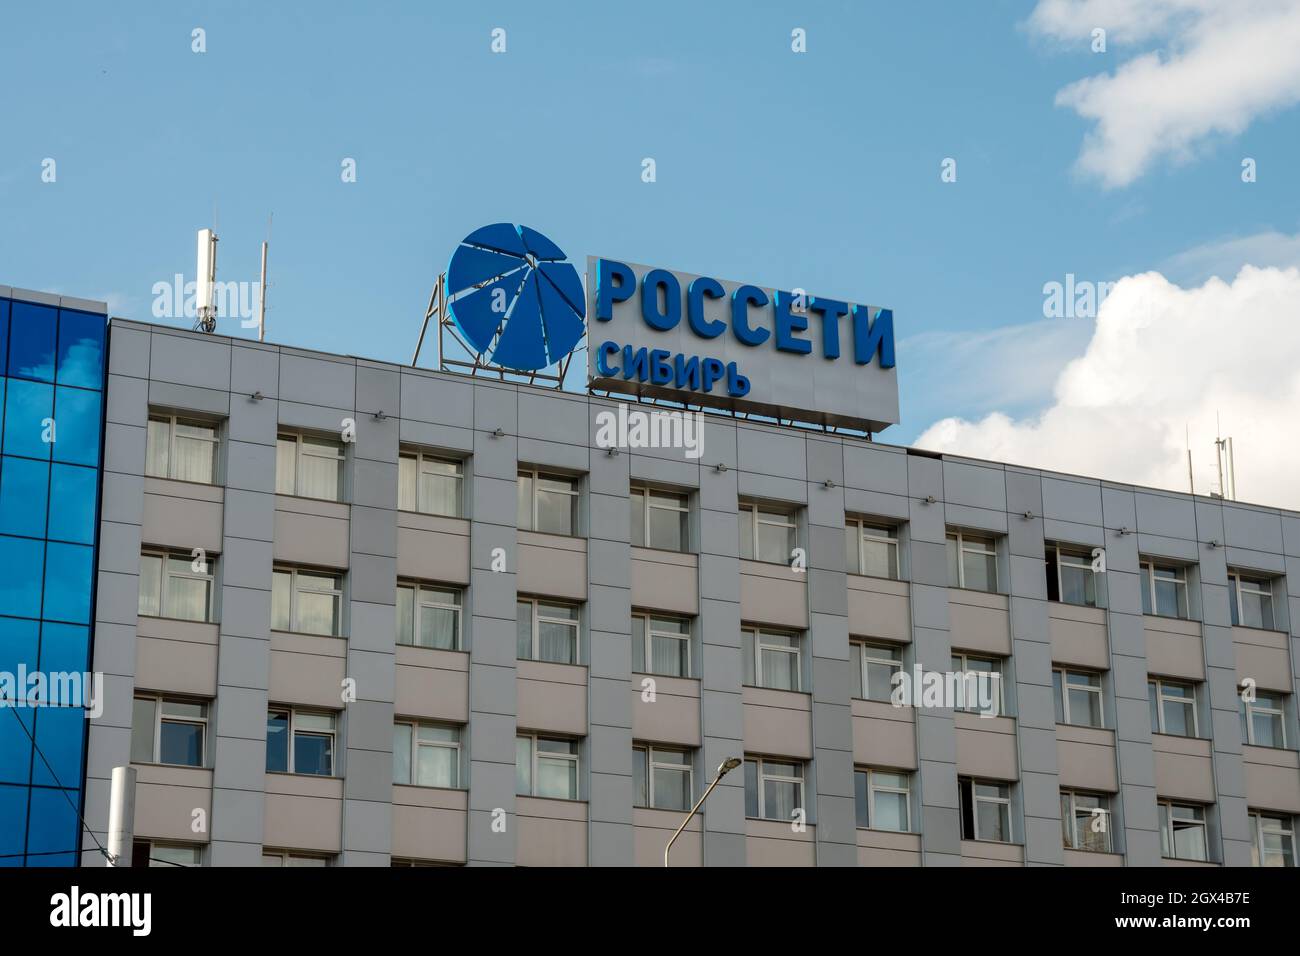 Il logo e il nome in russo della società - Rosseti Siberia - che effettua la trasmissione e la distribuzione di energia elettrica sul tetto di Foto Stock